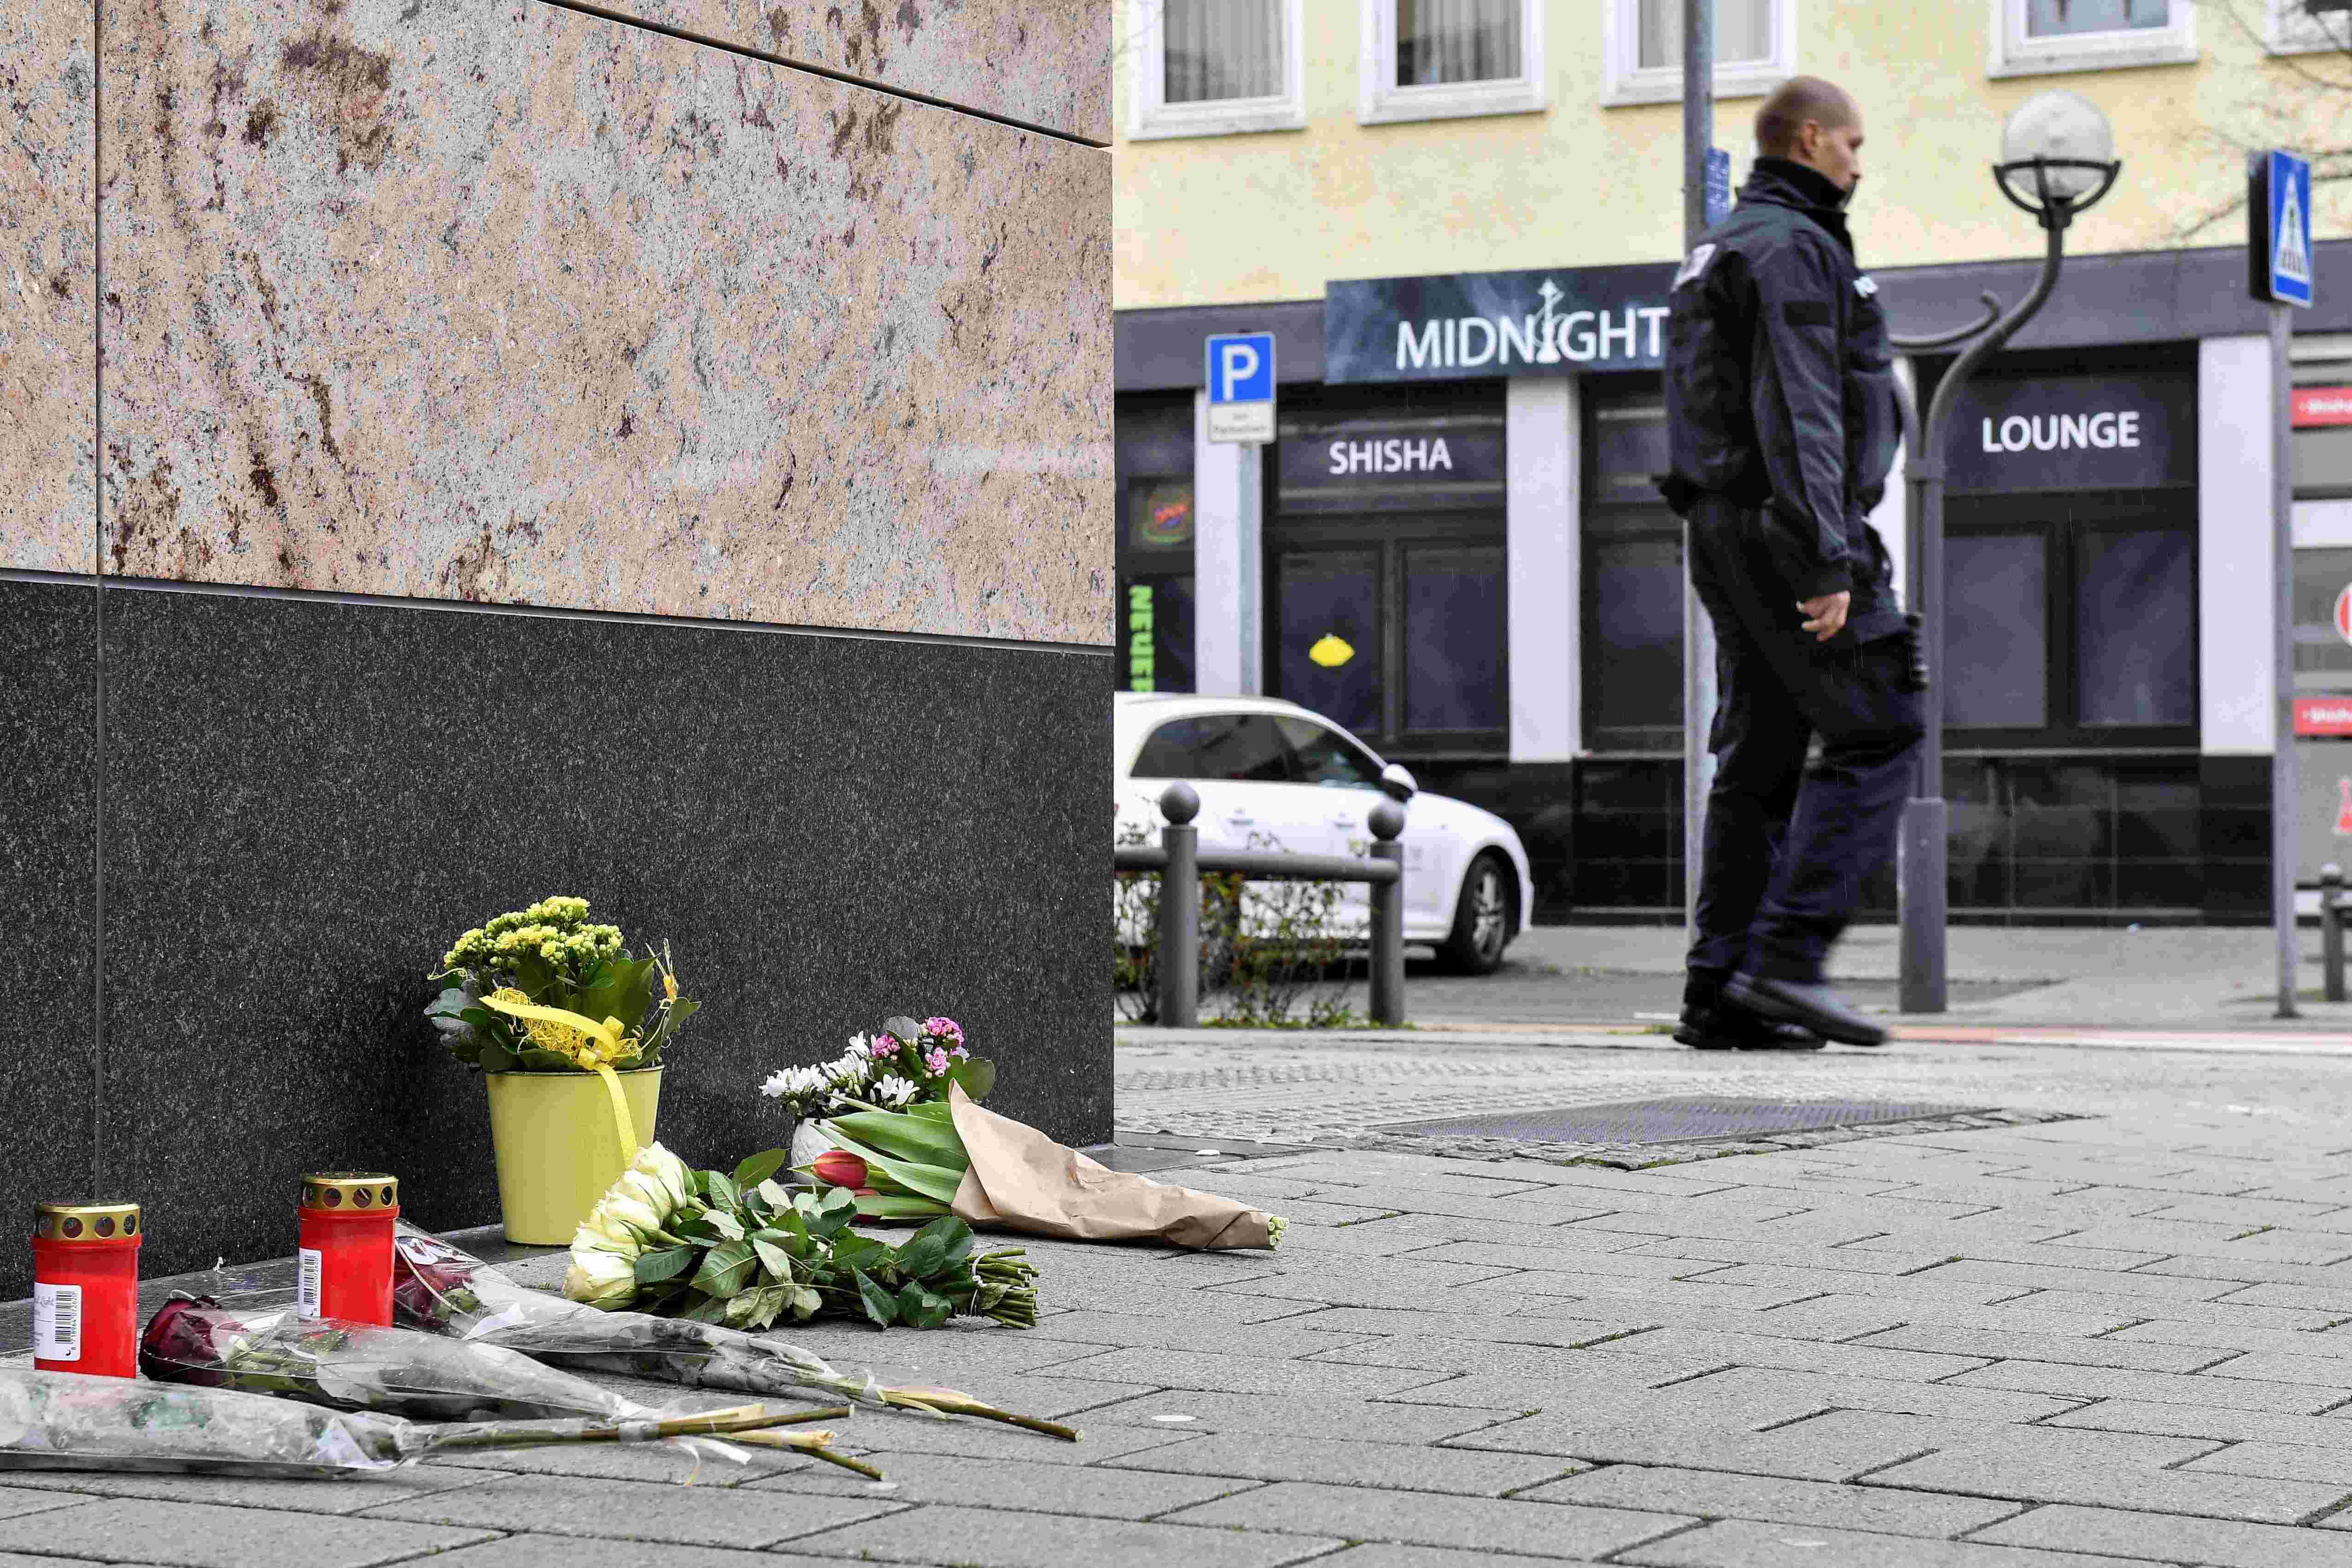 Auf dem Foto ist die Shisha-Bar "Midnight" in Hanau zu sehen, in der der 43-jährige Tobias R. seinen Anschlag startete. Im Vordergrund liegen Blumen auf dem Boden. Außerdem ist ein Polizist zu sehen, der gerade weggeht.